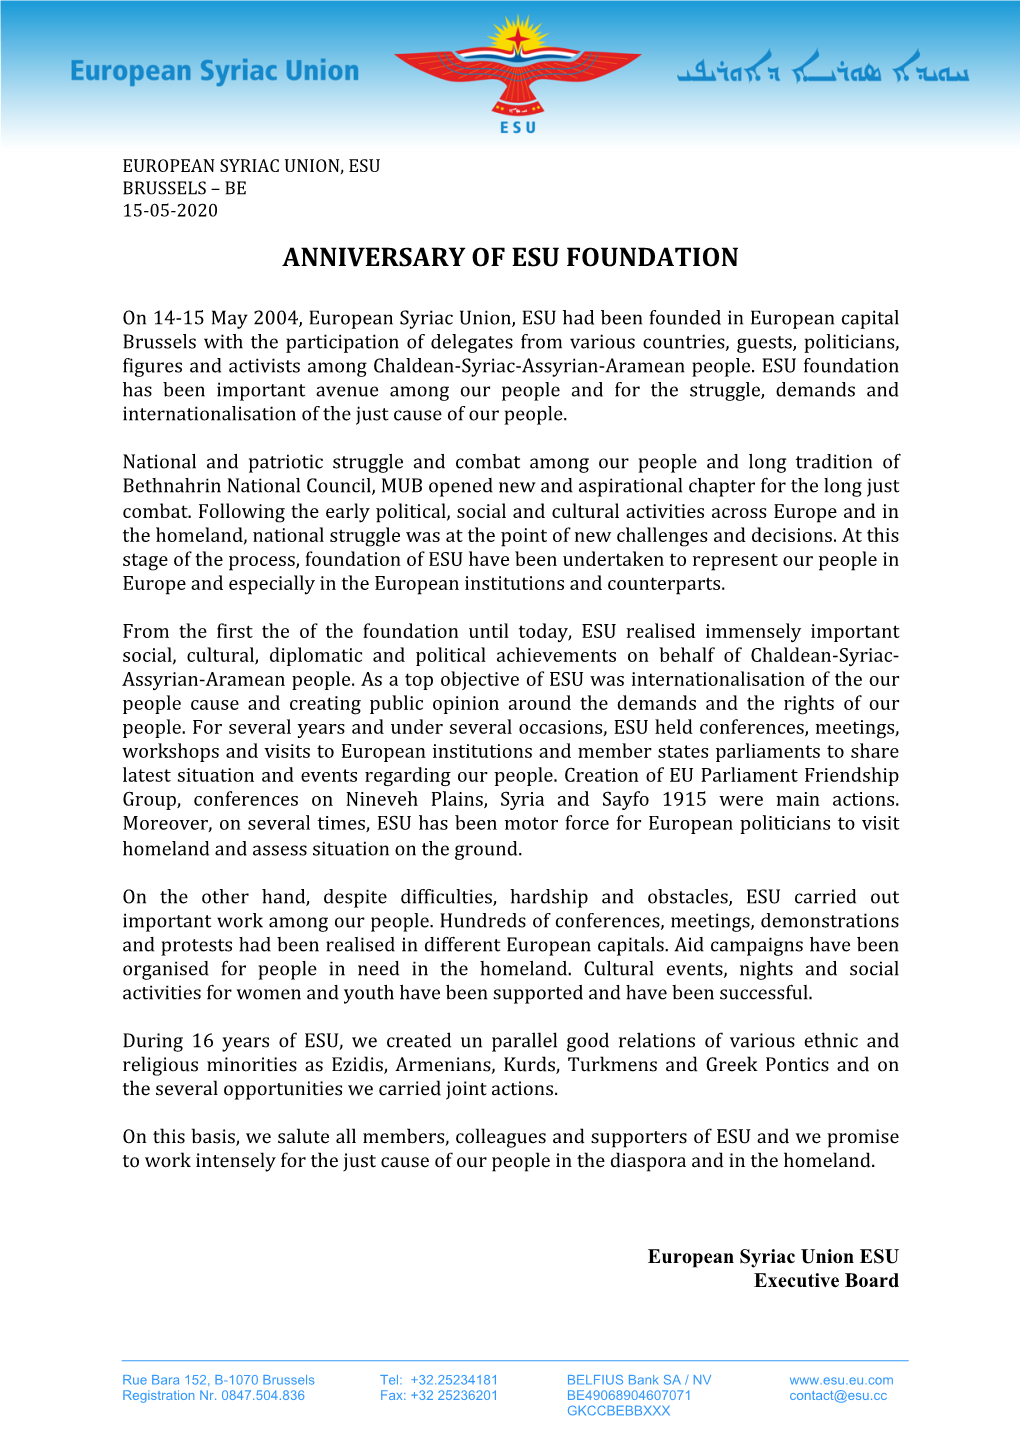 Anniversary of Esu Foundation